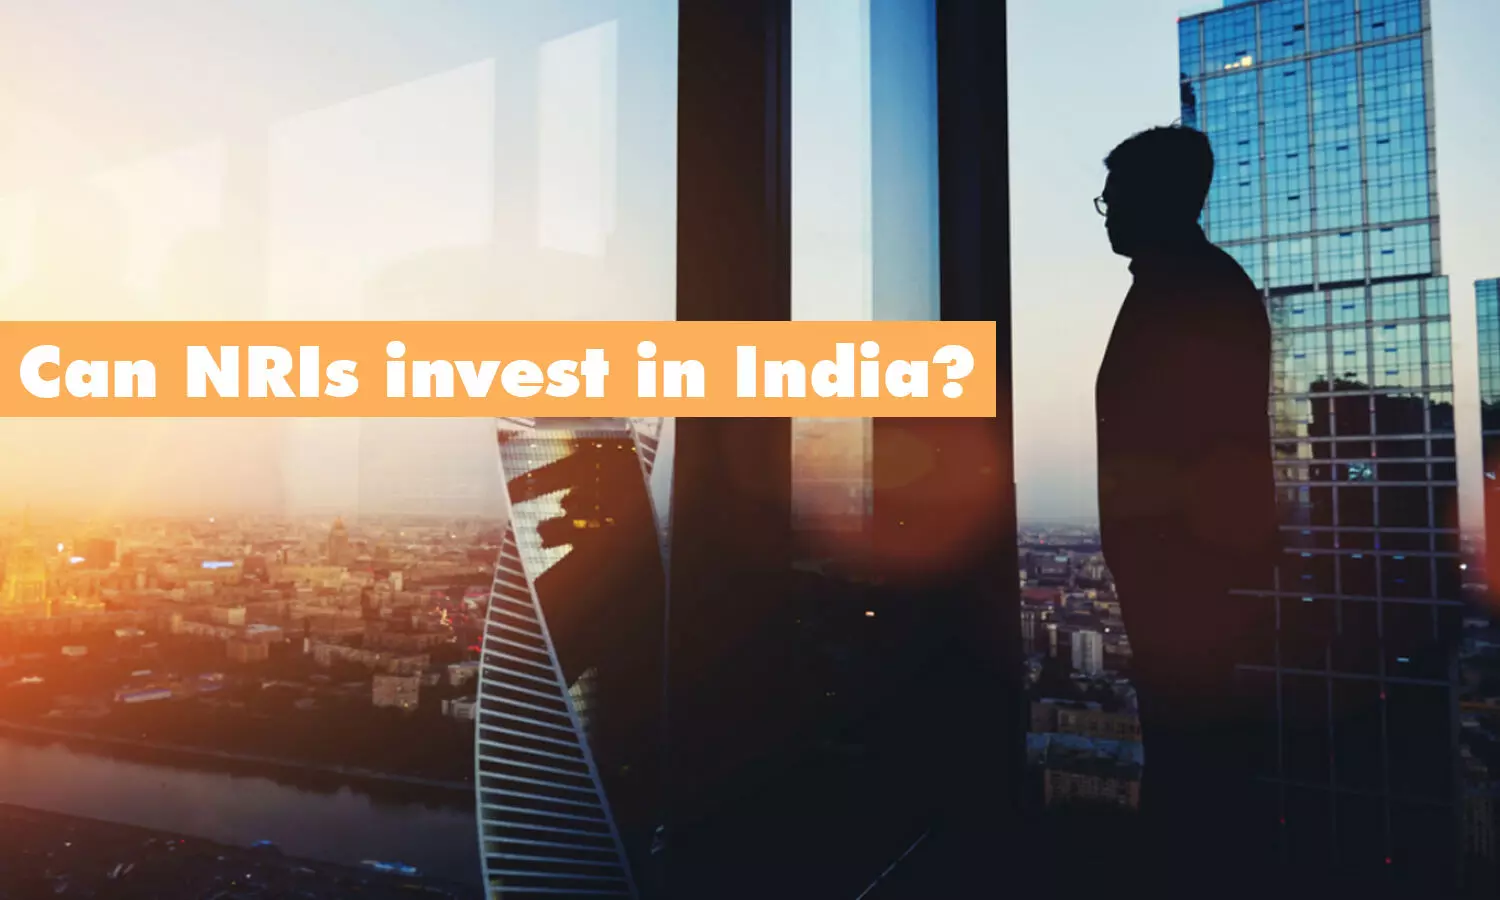 NRI investment in India